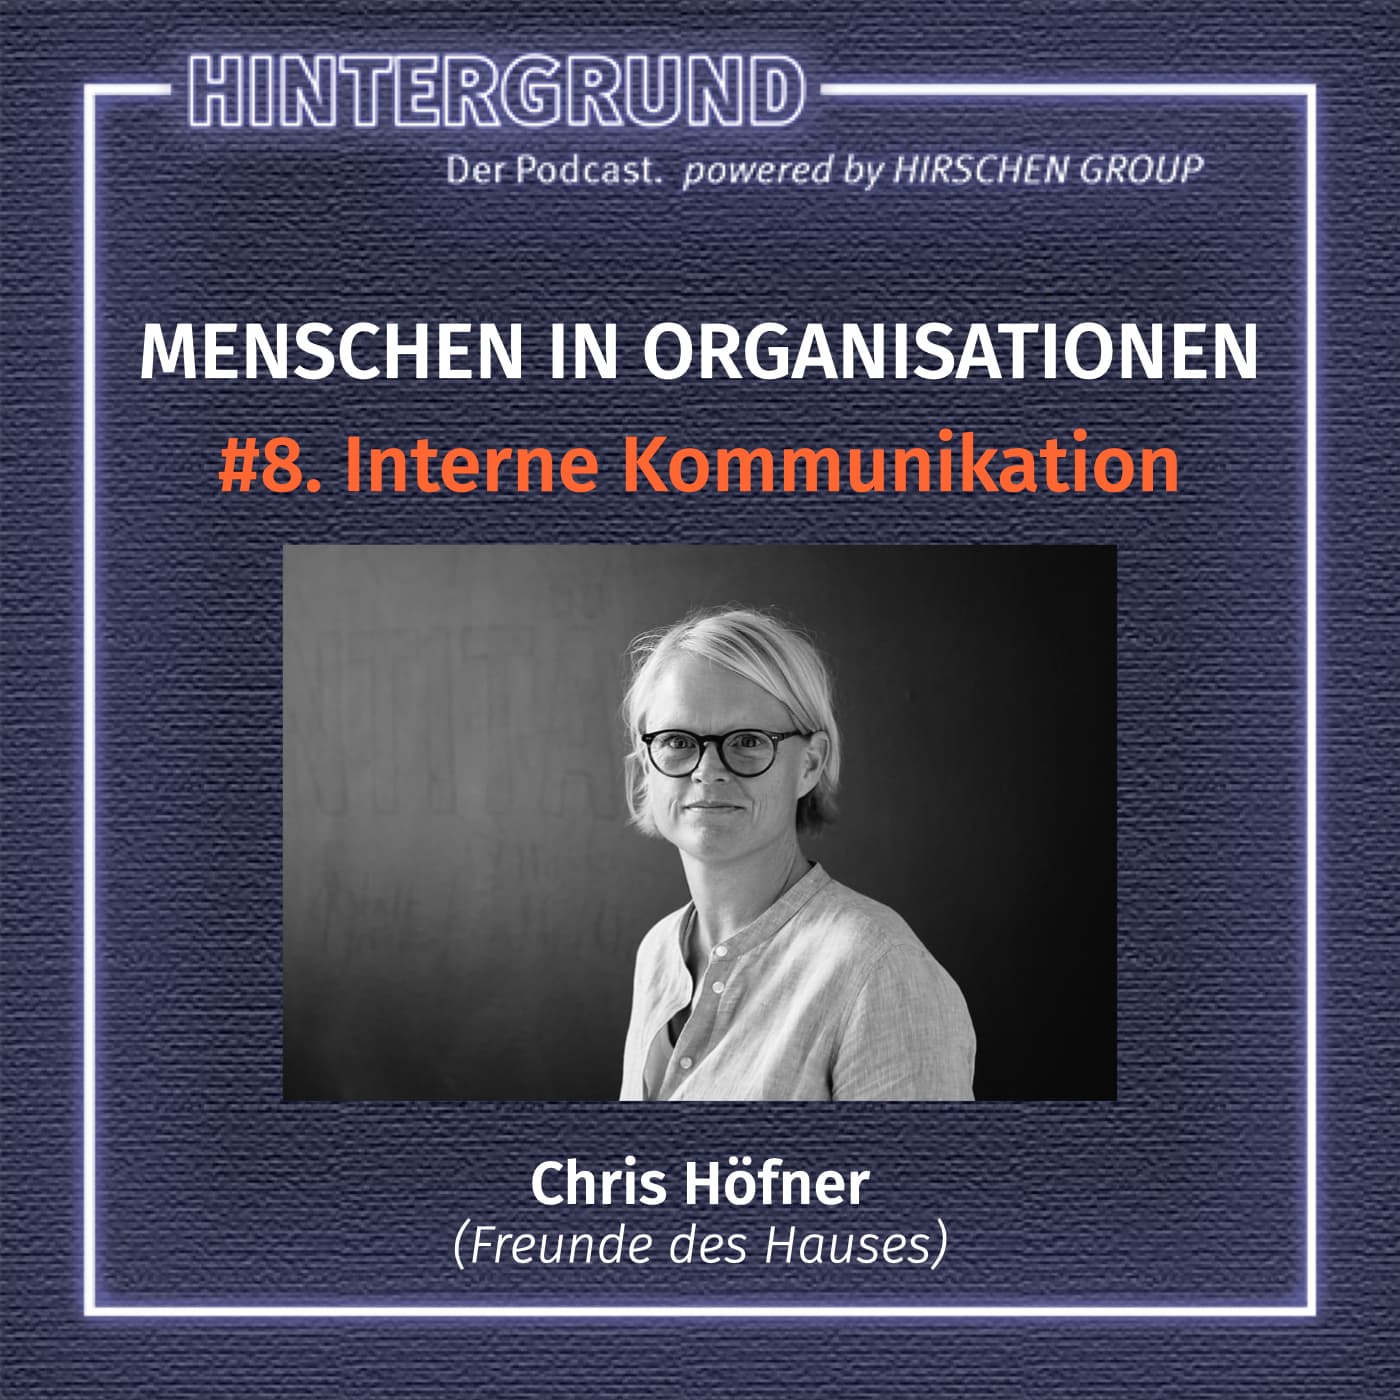 #8. Chris Höfner: Interne Kommunikation ist Chefsache!